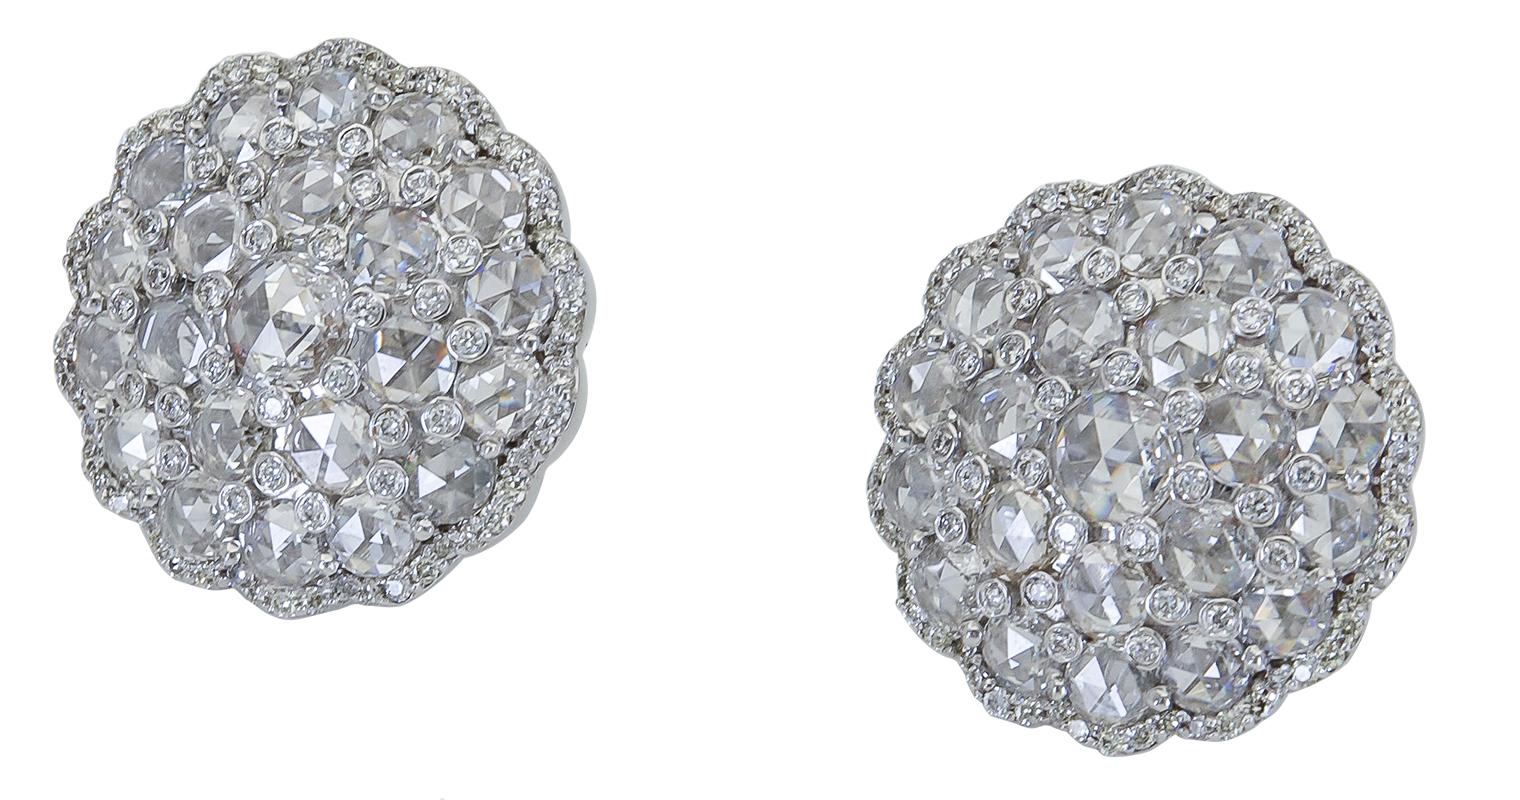 Boucles d'oreilles en forme de fleur mettant en valeur une grappe de diamants ronds taillés en rose et terminées par un bord en diamant brillant. Fabriqué en or blanc 18 carats.
0.84 pouces de diamètre.